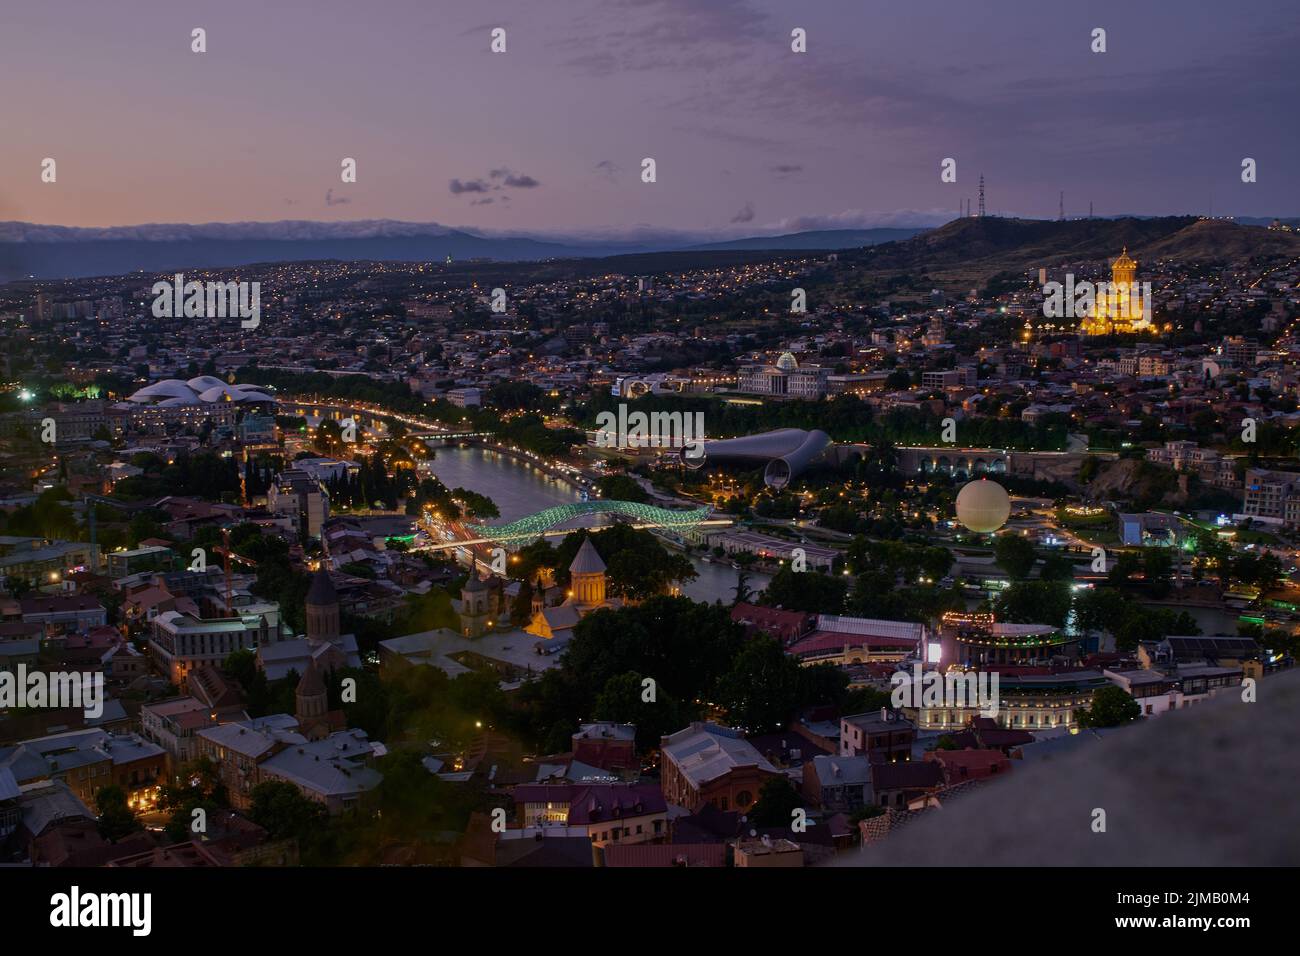 Tbilisi, notte in Georgia Vista panoramica dalla cima della fortezza di Narikala che mostra il ponte della pace, Rike Park, fiume Kura e Cattedrale della Santissima Trinità Foto Stock